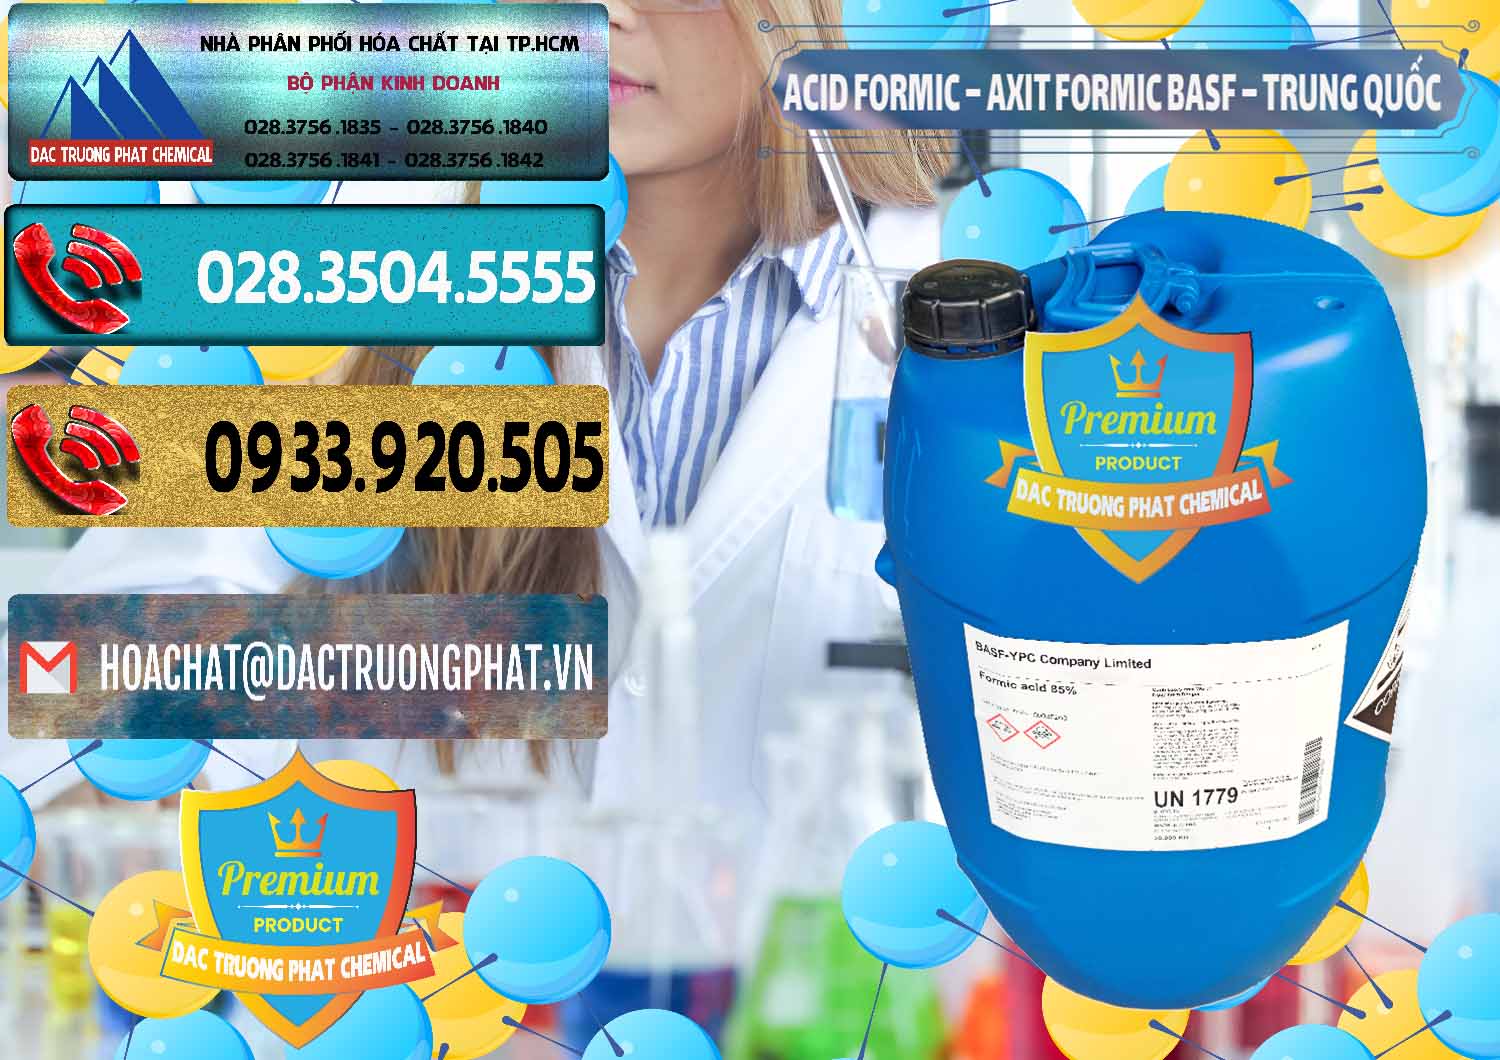 Đơn vị bán & phân phối Acid Formic - Axit Formic BASF Trung Quốc China - 0025 - Cty chuyên nhập khẩu _ cung cấp hóa chất tại TP.HCM - hoachatdetnhuom.com